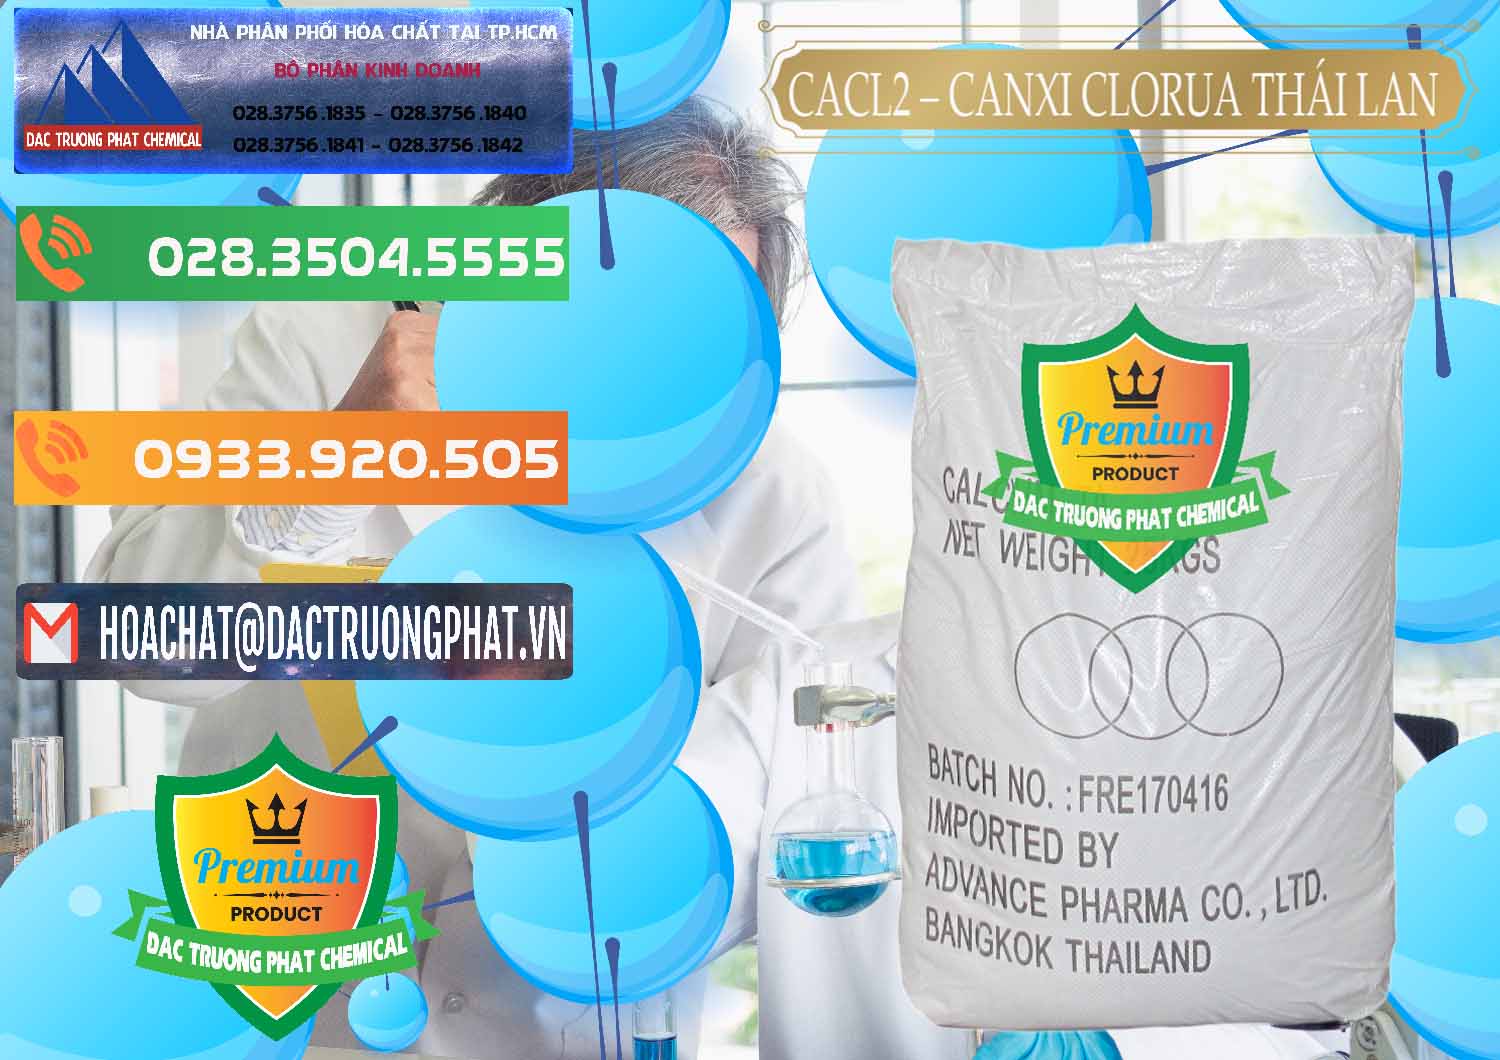 Công ty chuyên bán _ cung ứng CaCl2 – Canxi Clorua 96% Thái Lan - 0042 - Công ty chuyên kinh doanh và cung cấp hóa chất tại TP.HCM - hoachatxulynuoc.com.vn